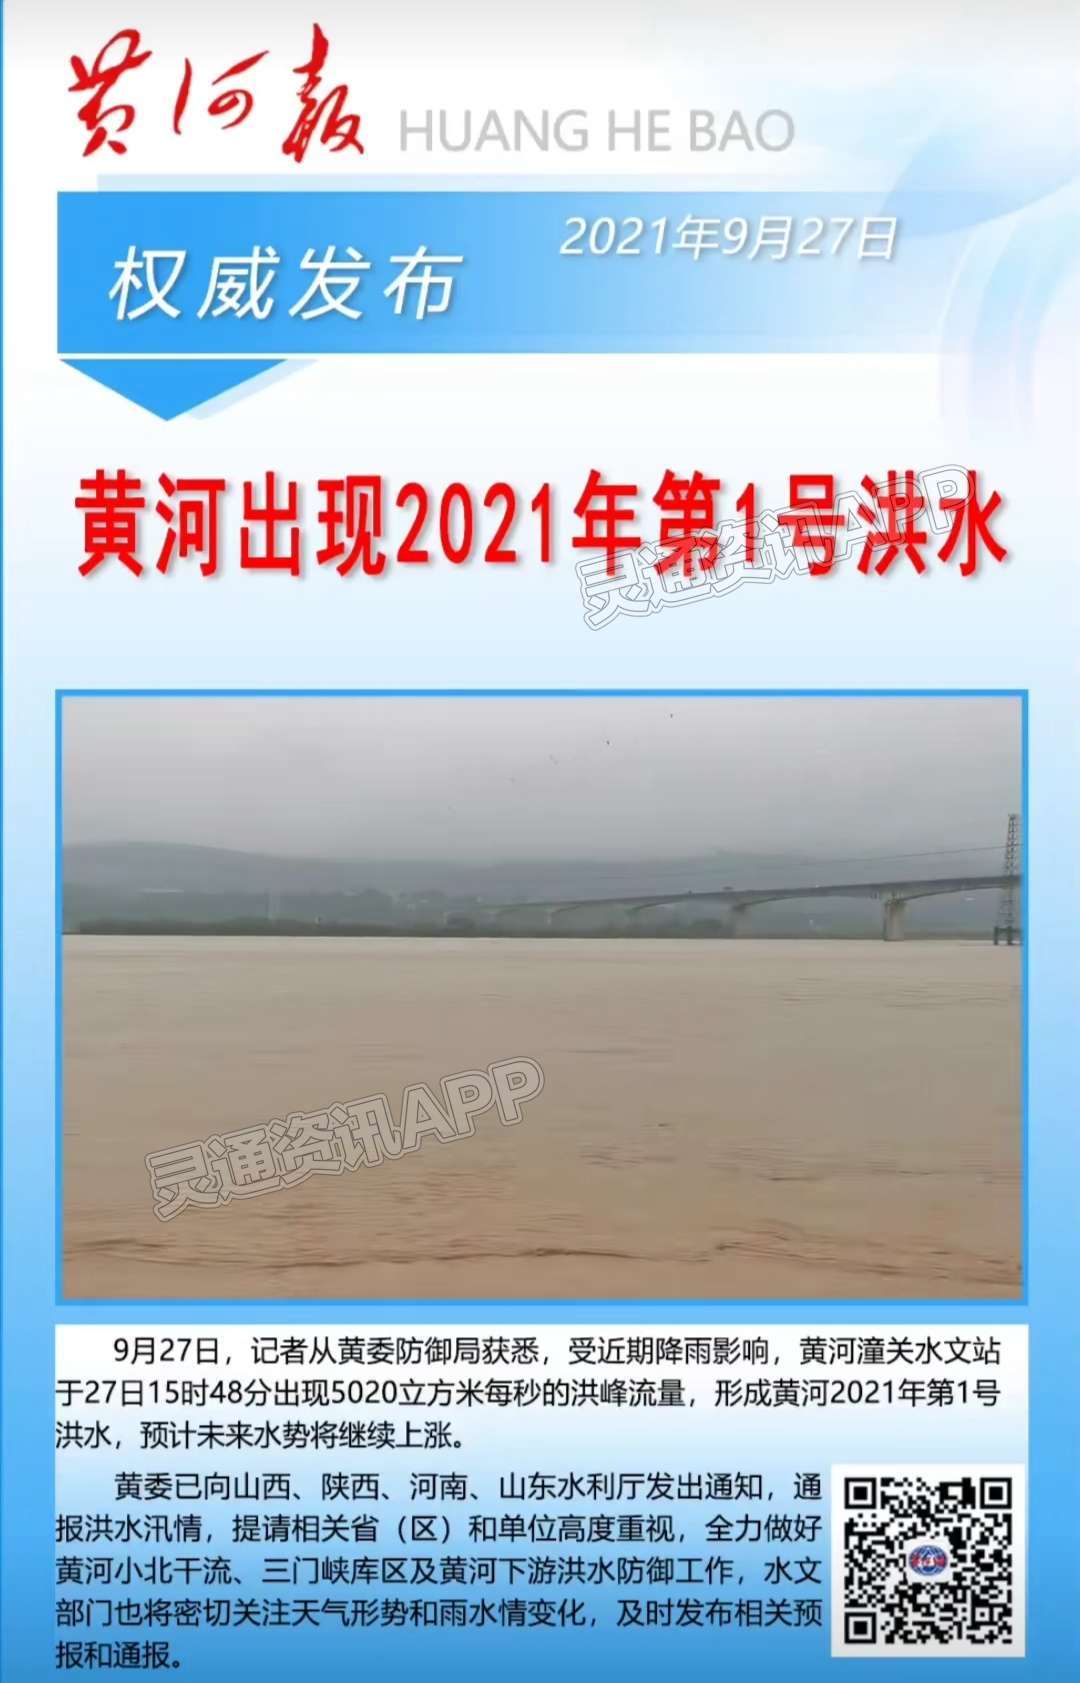 黄河出现2021年第1号洪水，黄河中下游水旱灾害防御应急响应提升至Ⅲ级“ng体育”(图1)